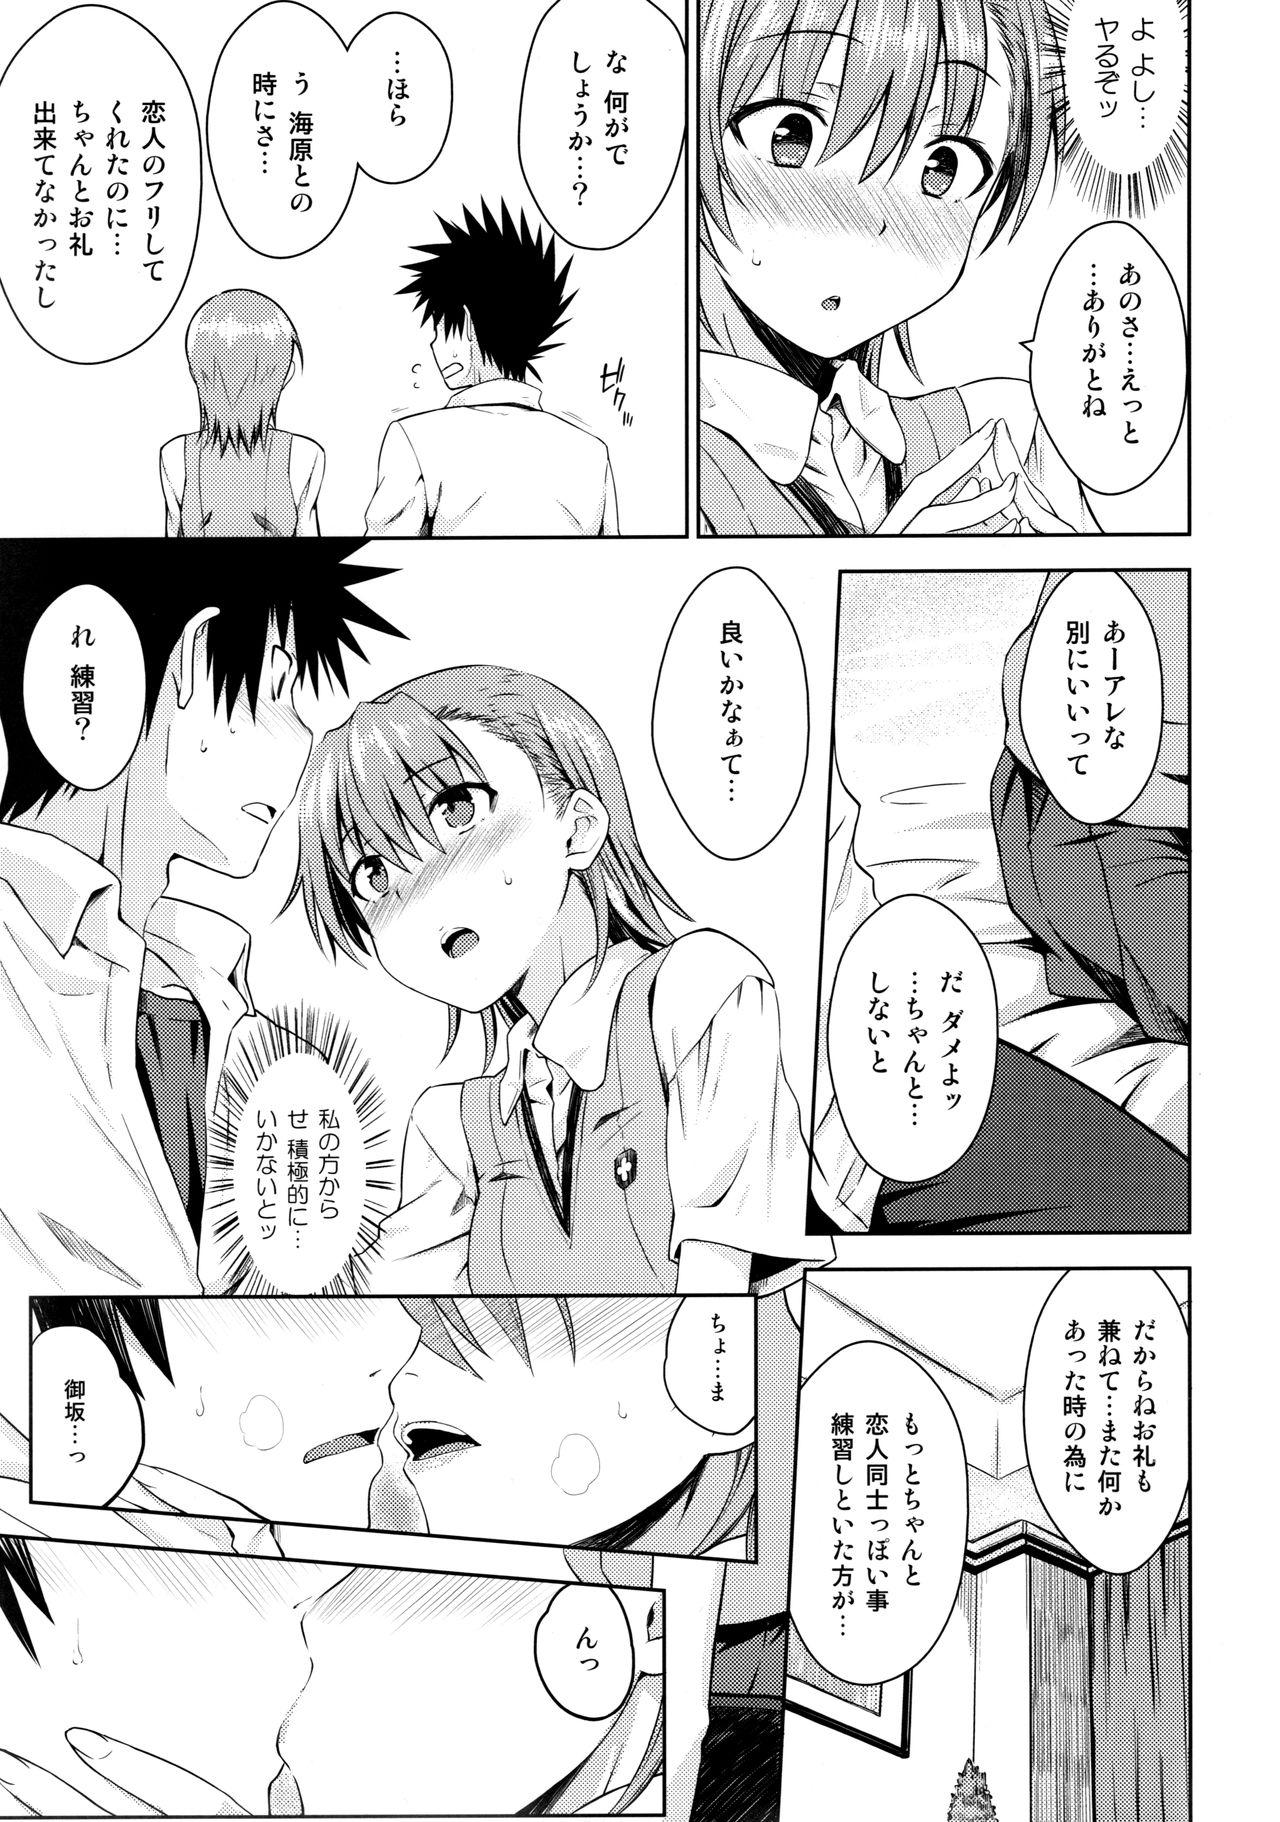 Pissing Natsuyasumi no Shukudai - Toaru kagaku no railgun Virgin - Page 10